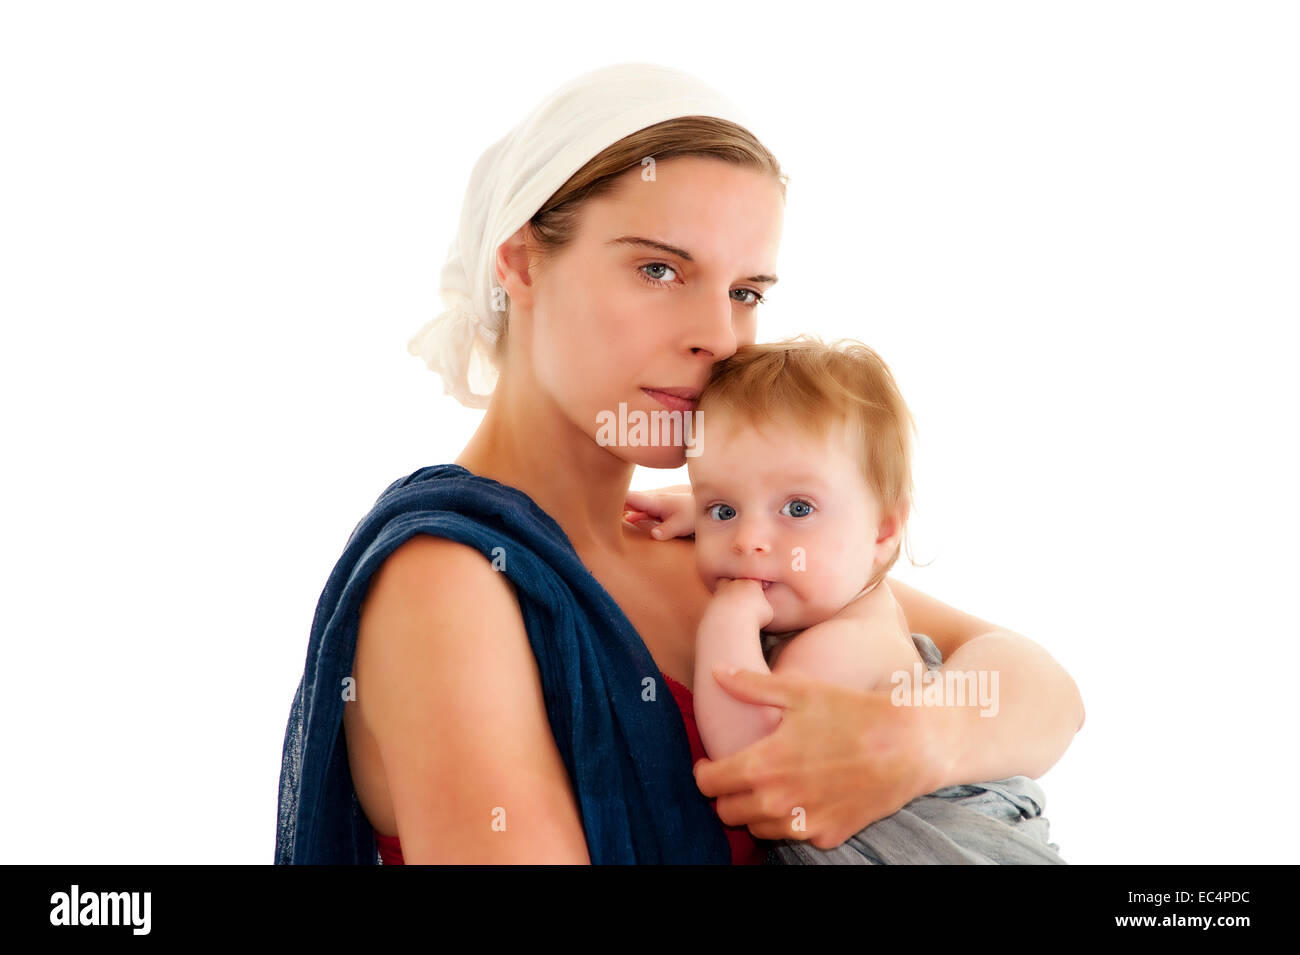 Madre sosteniendo a su bebé la imagen transfiere el clásico tema de Madonna en la actualidad Foto de stock